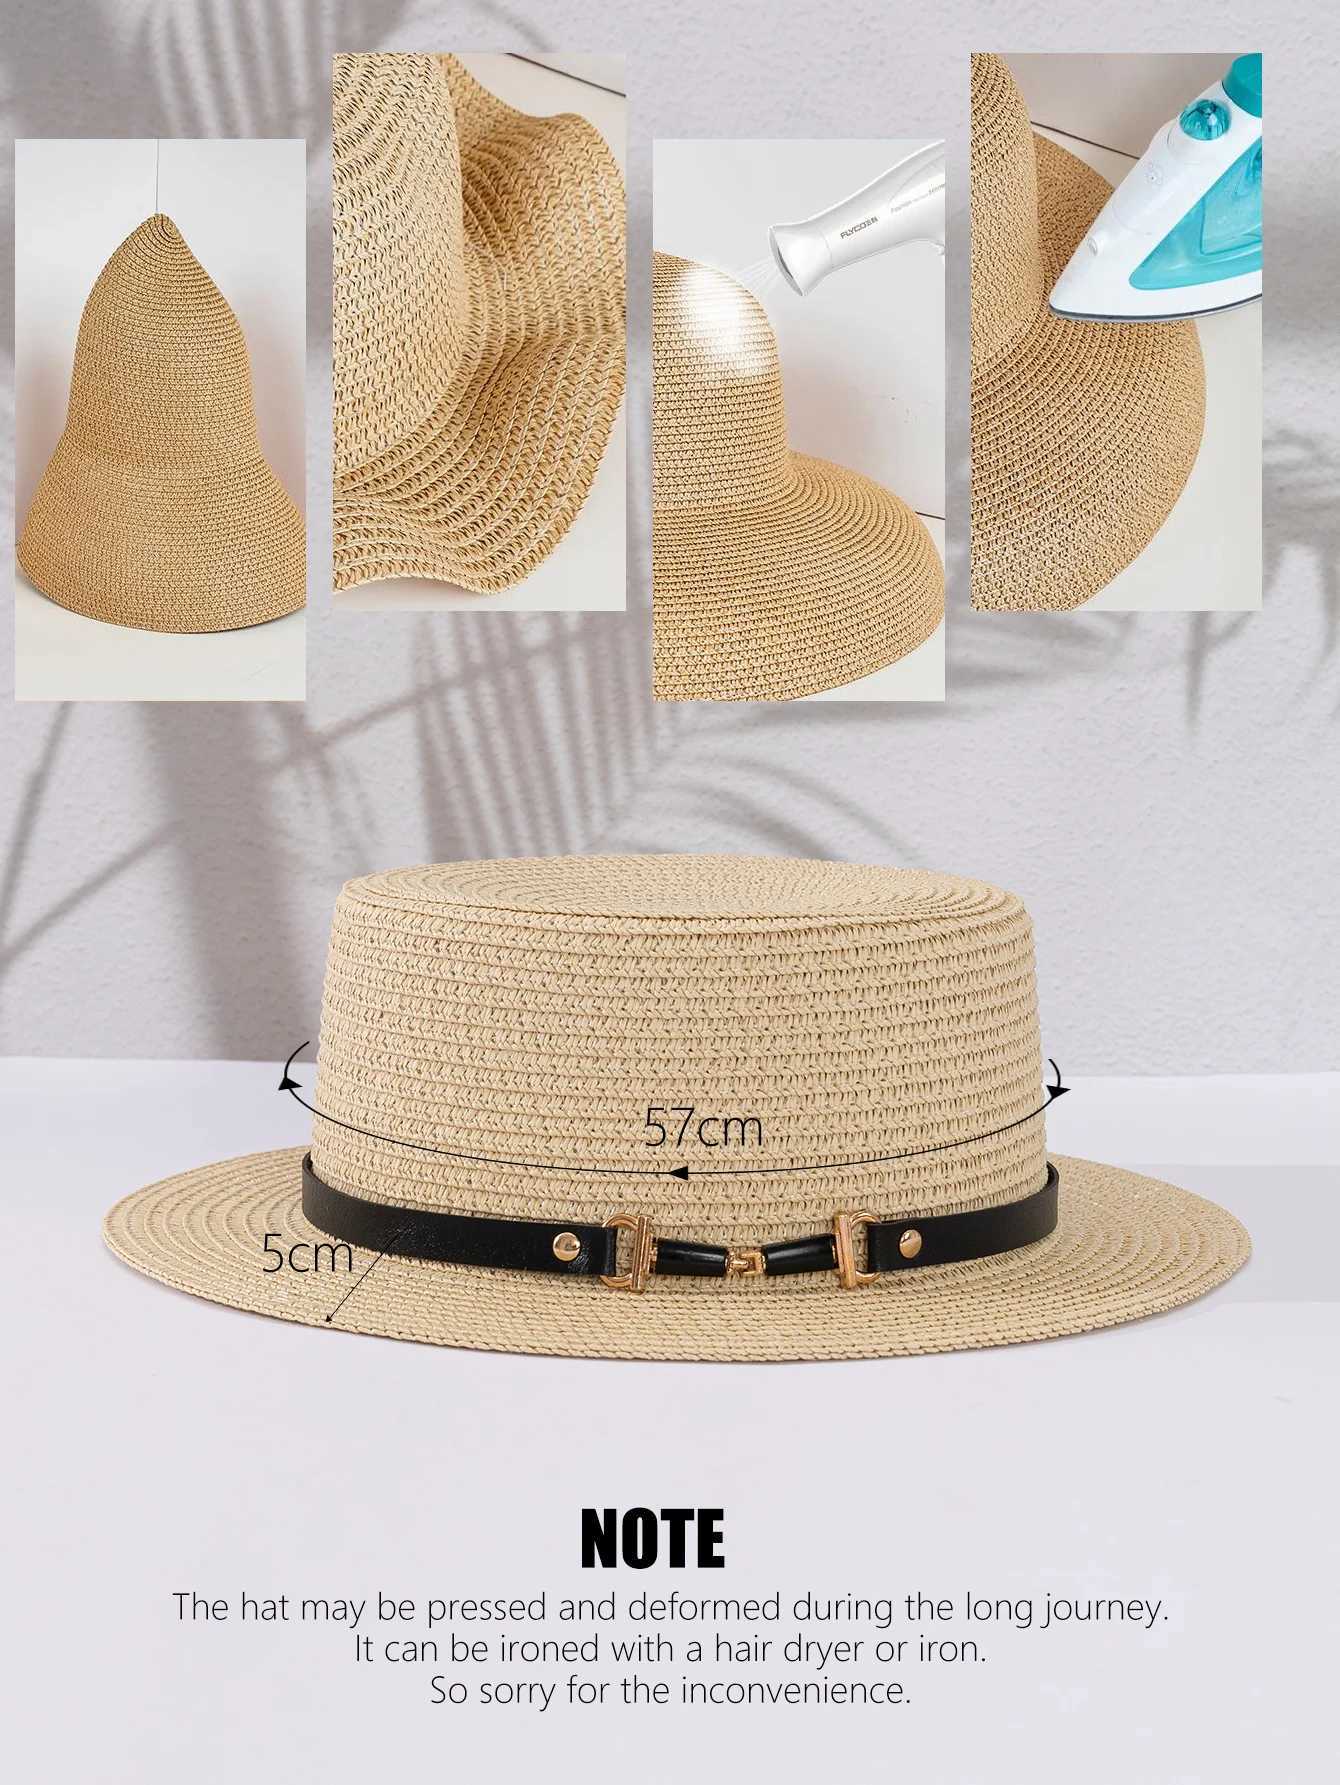 Breda randen hattar hink hattar sommarstrat hatt kvinnor fashionabla str vävda solskugga hatt platt topp brittisk retro solskydd hatt rese strand sol hatt j240425